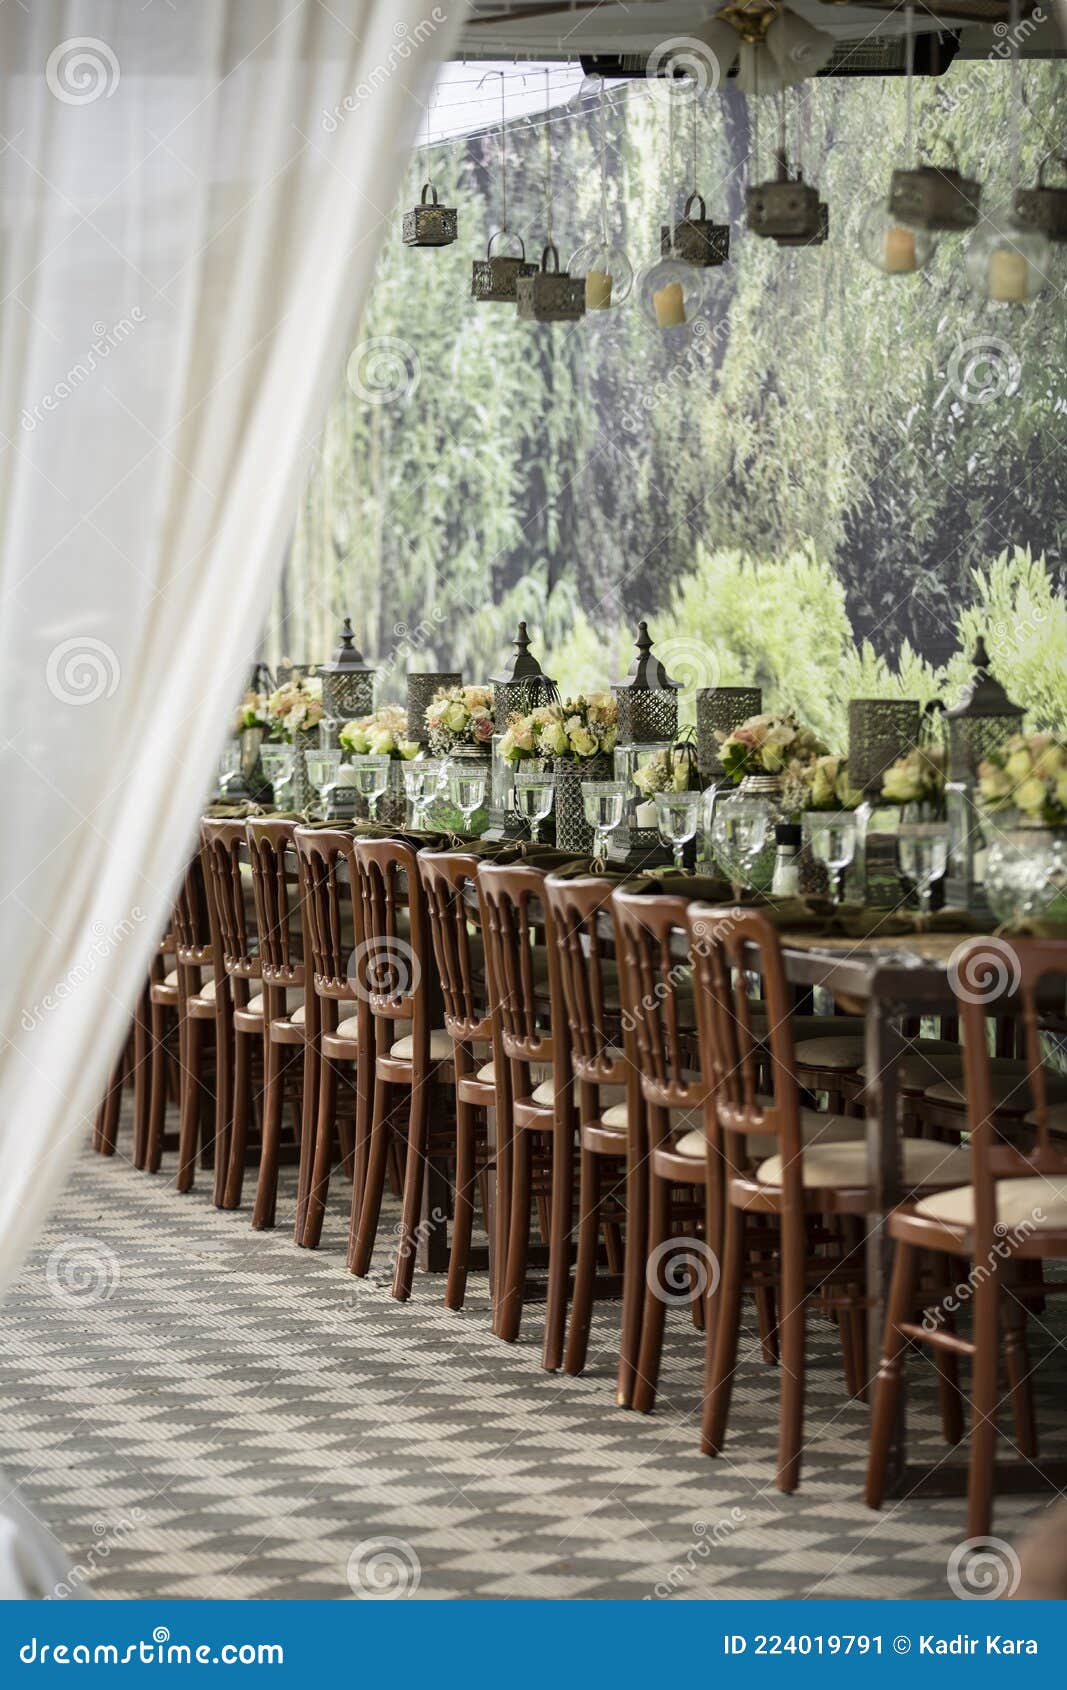 decorative venue , luxury dining event decor